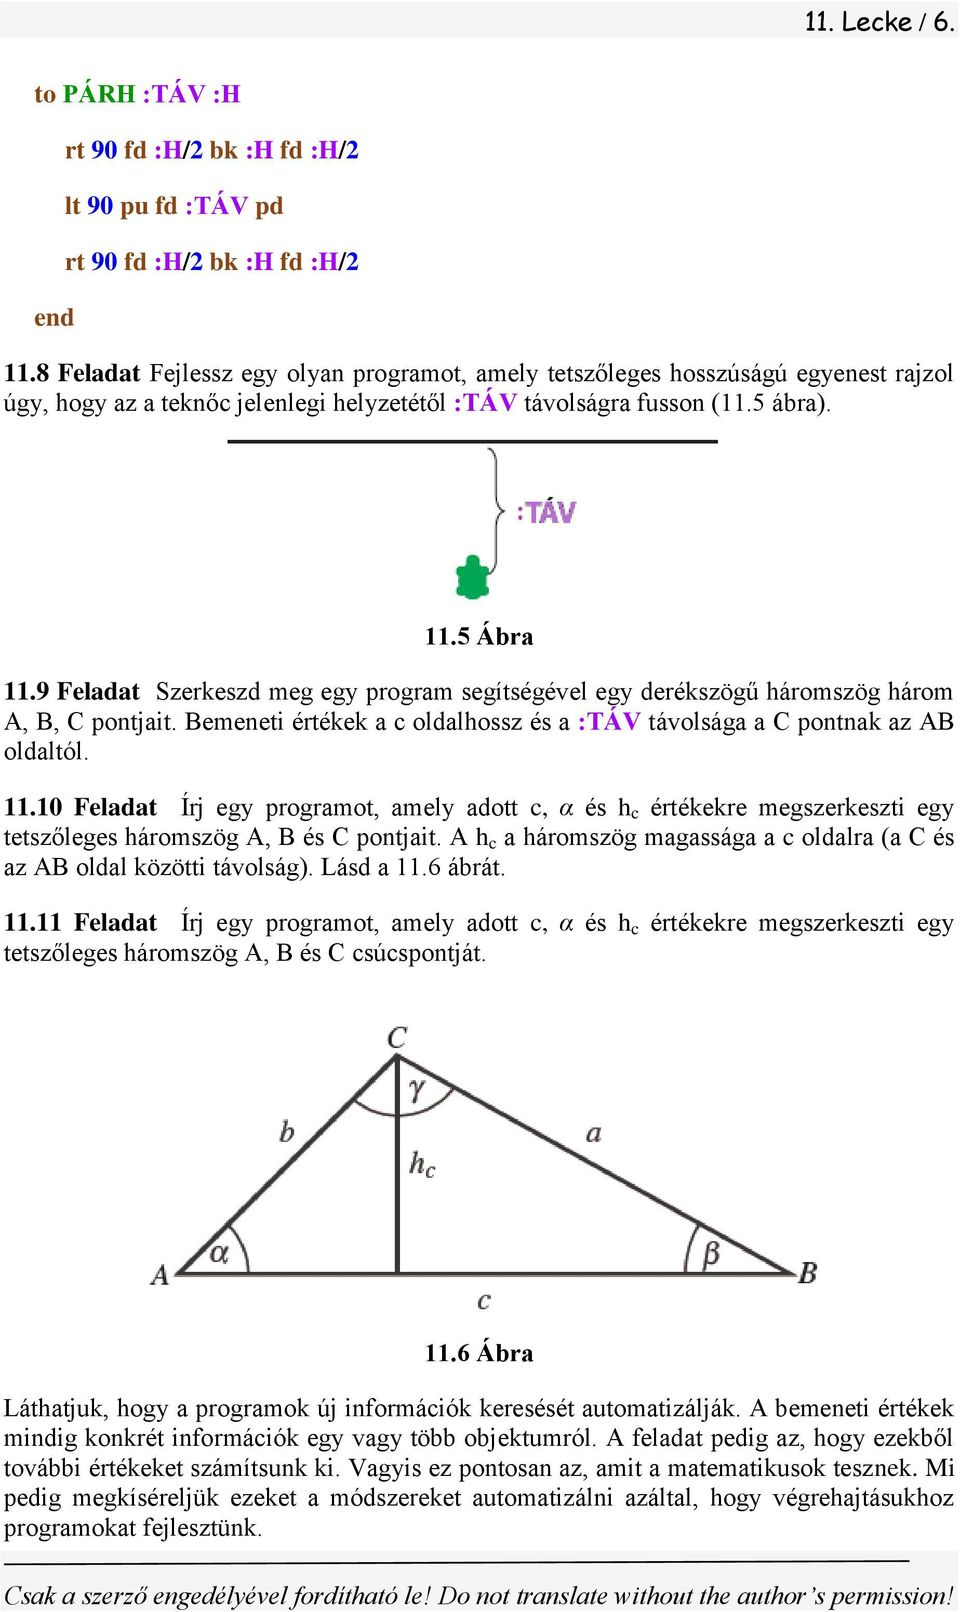 9 Feladat Szerkeszd meg egy program segítségével egy derékszögű háromszög három A, B, C pontjait. Bemeneti értékek a c oldalhossz és a :TÁV távolsága a C pontnak az AB oldaltól. 11.